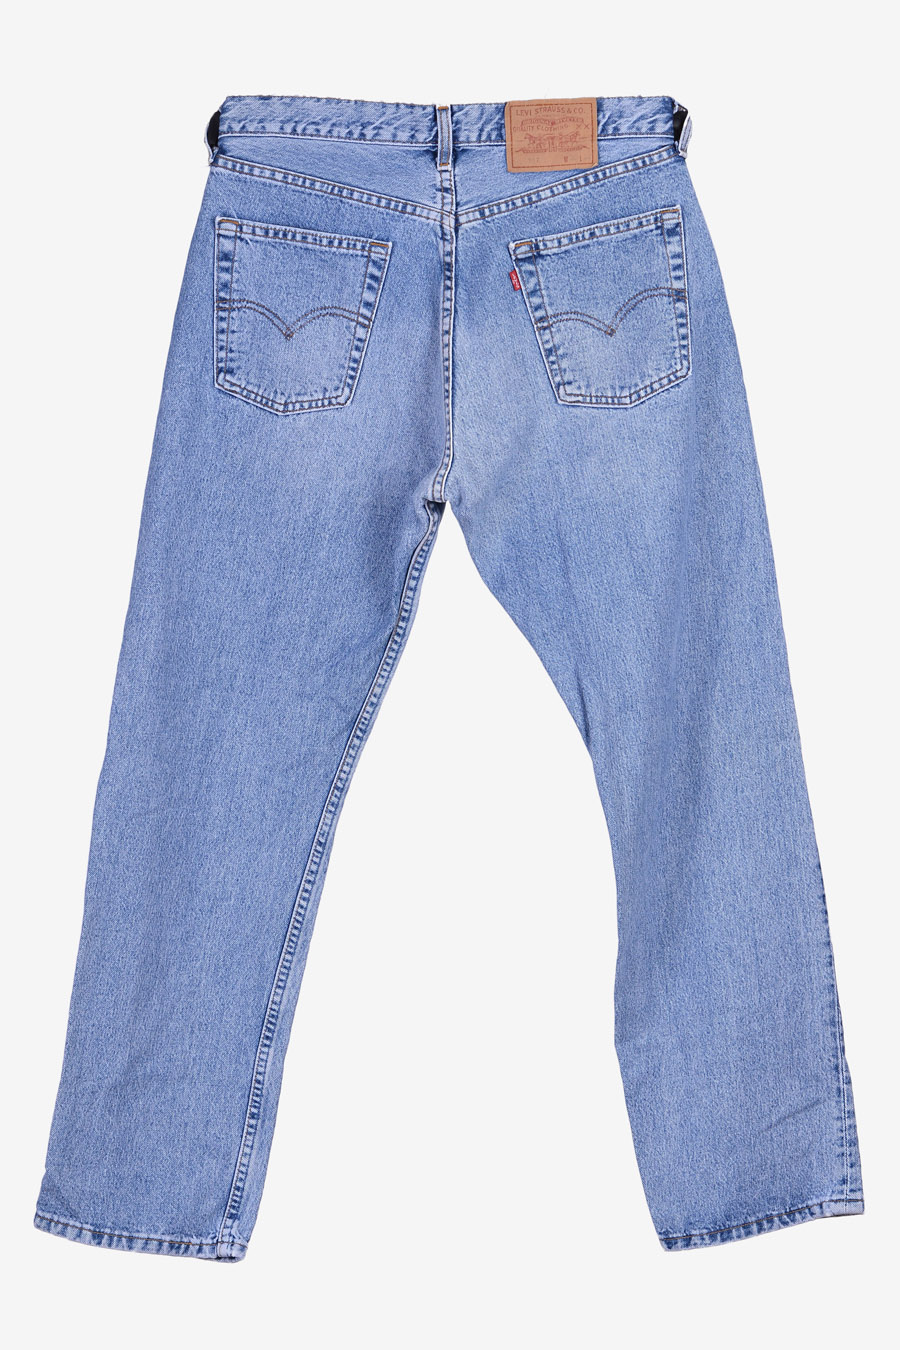 Vintage Levi's 517 Jeans | Size 33/30 - Brick Vintage